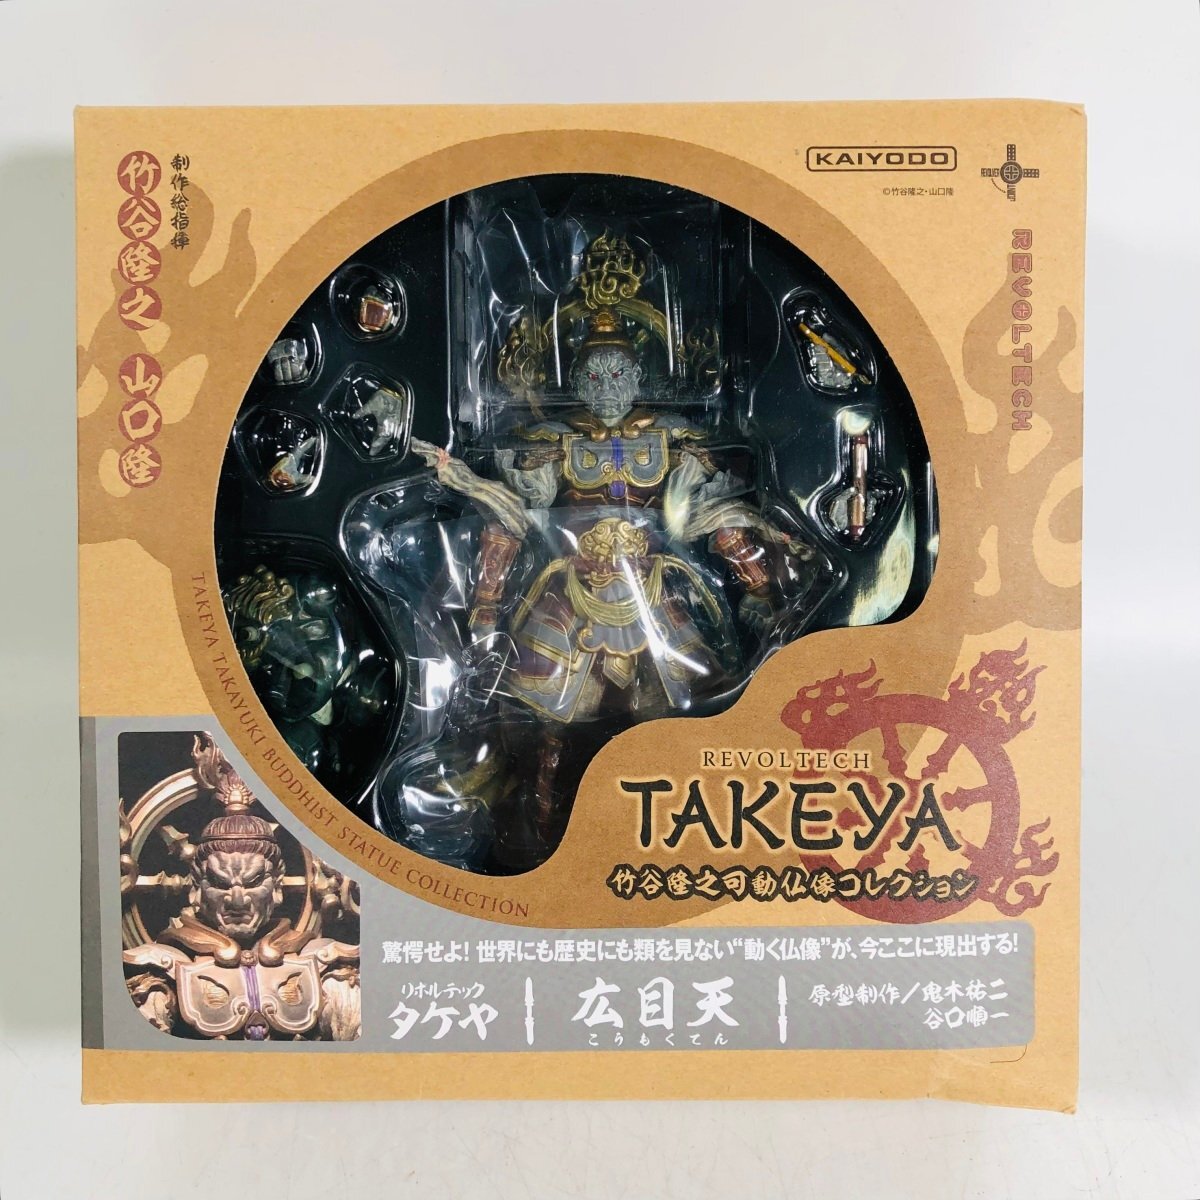  новый товар нераспечатанный Kaiyodo Revoltech takeya бамбук ... передвижной изображение Будды коллекция широкий глаз небо 